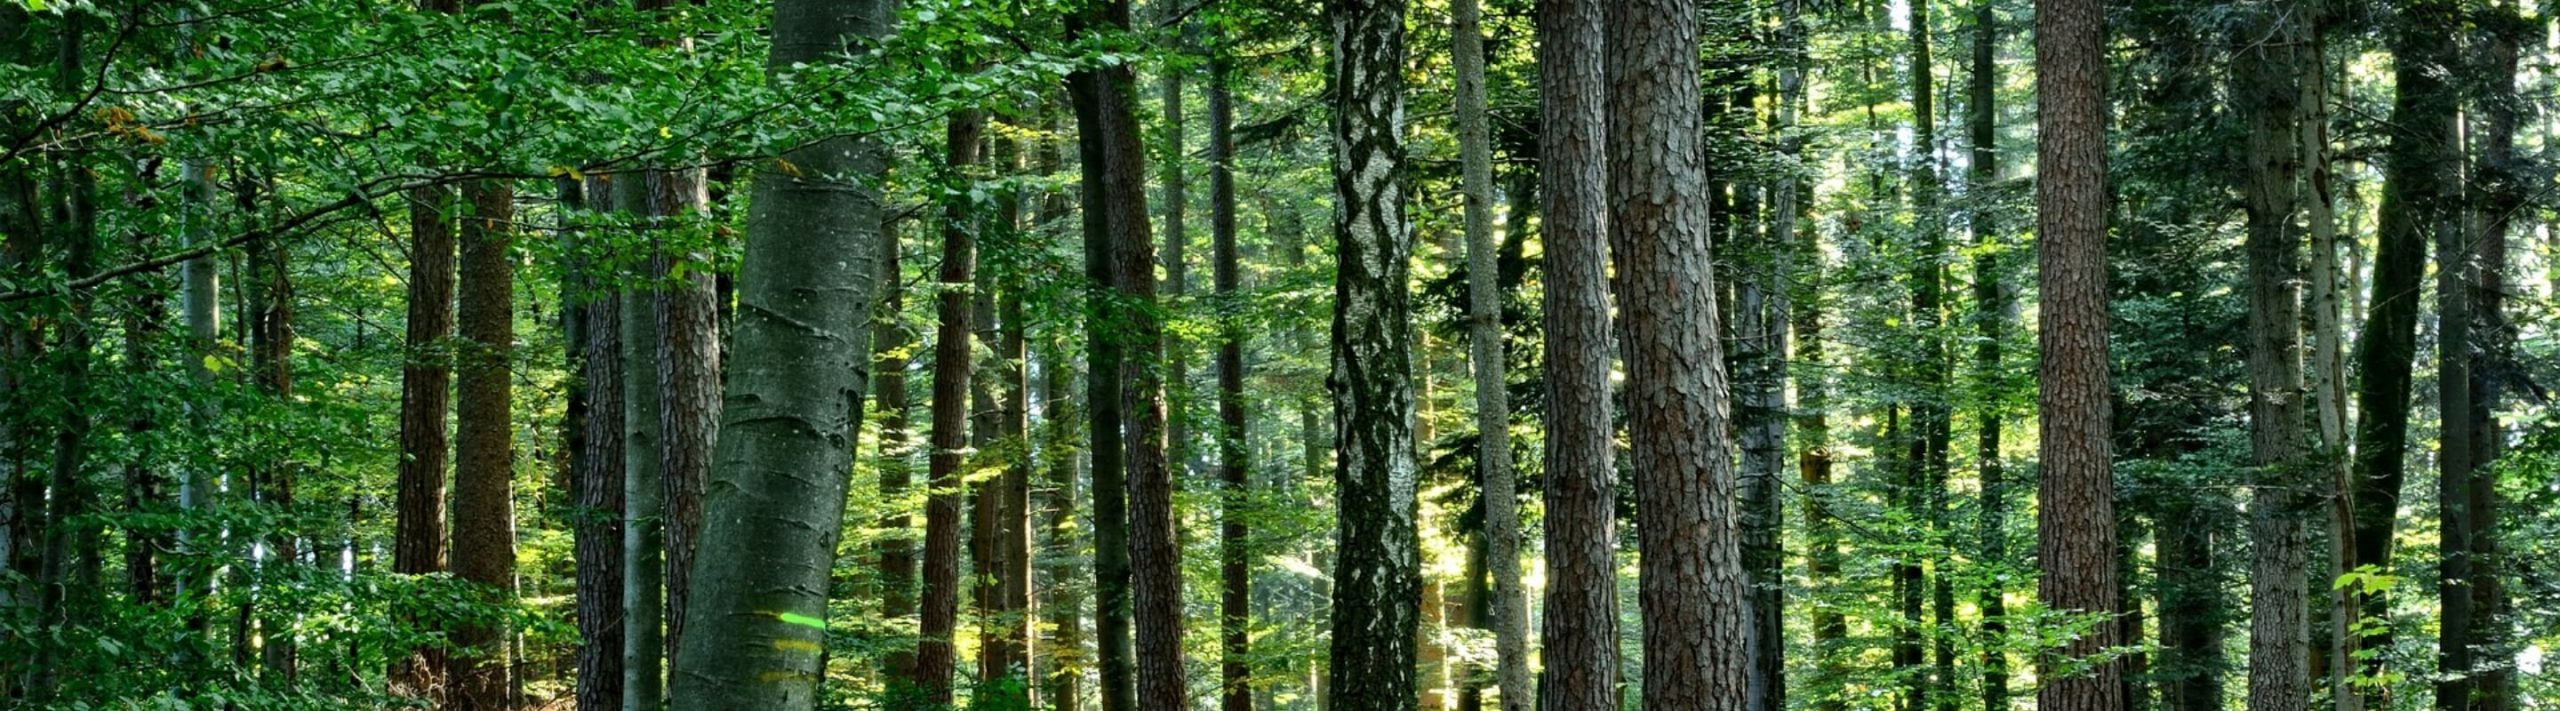 山林管理は私たちの緑豊かな暮らしのために